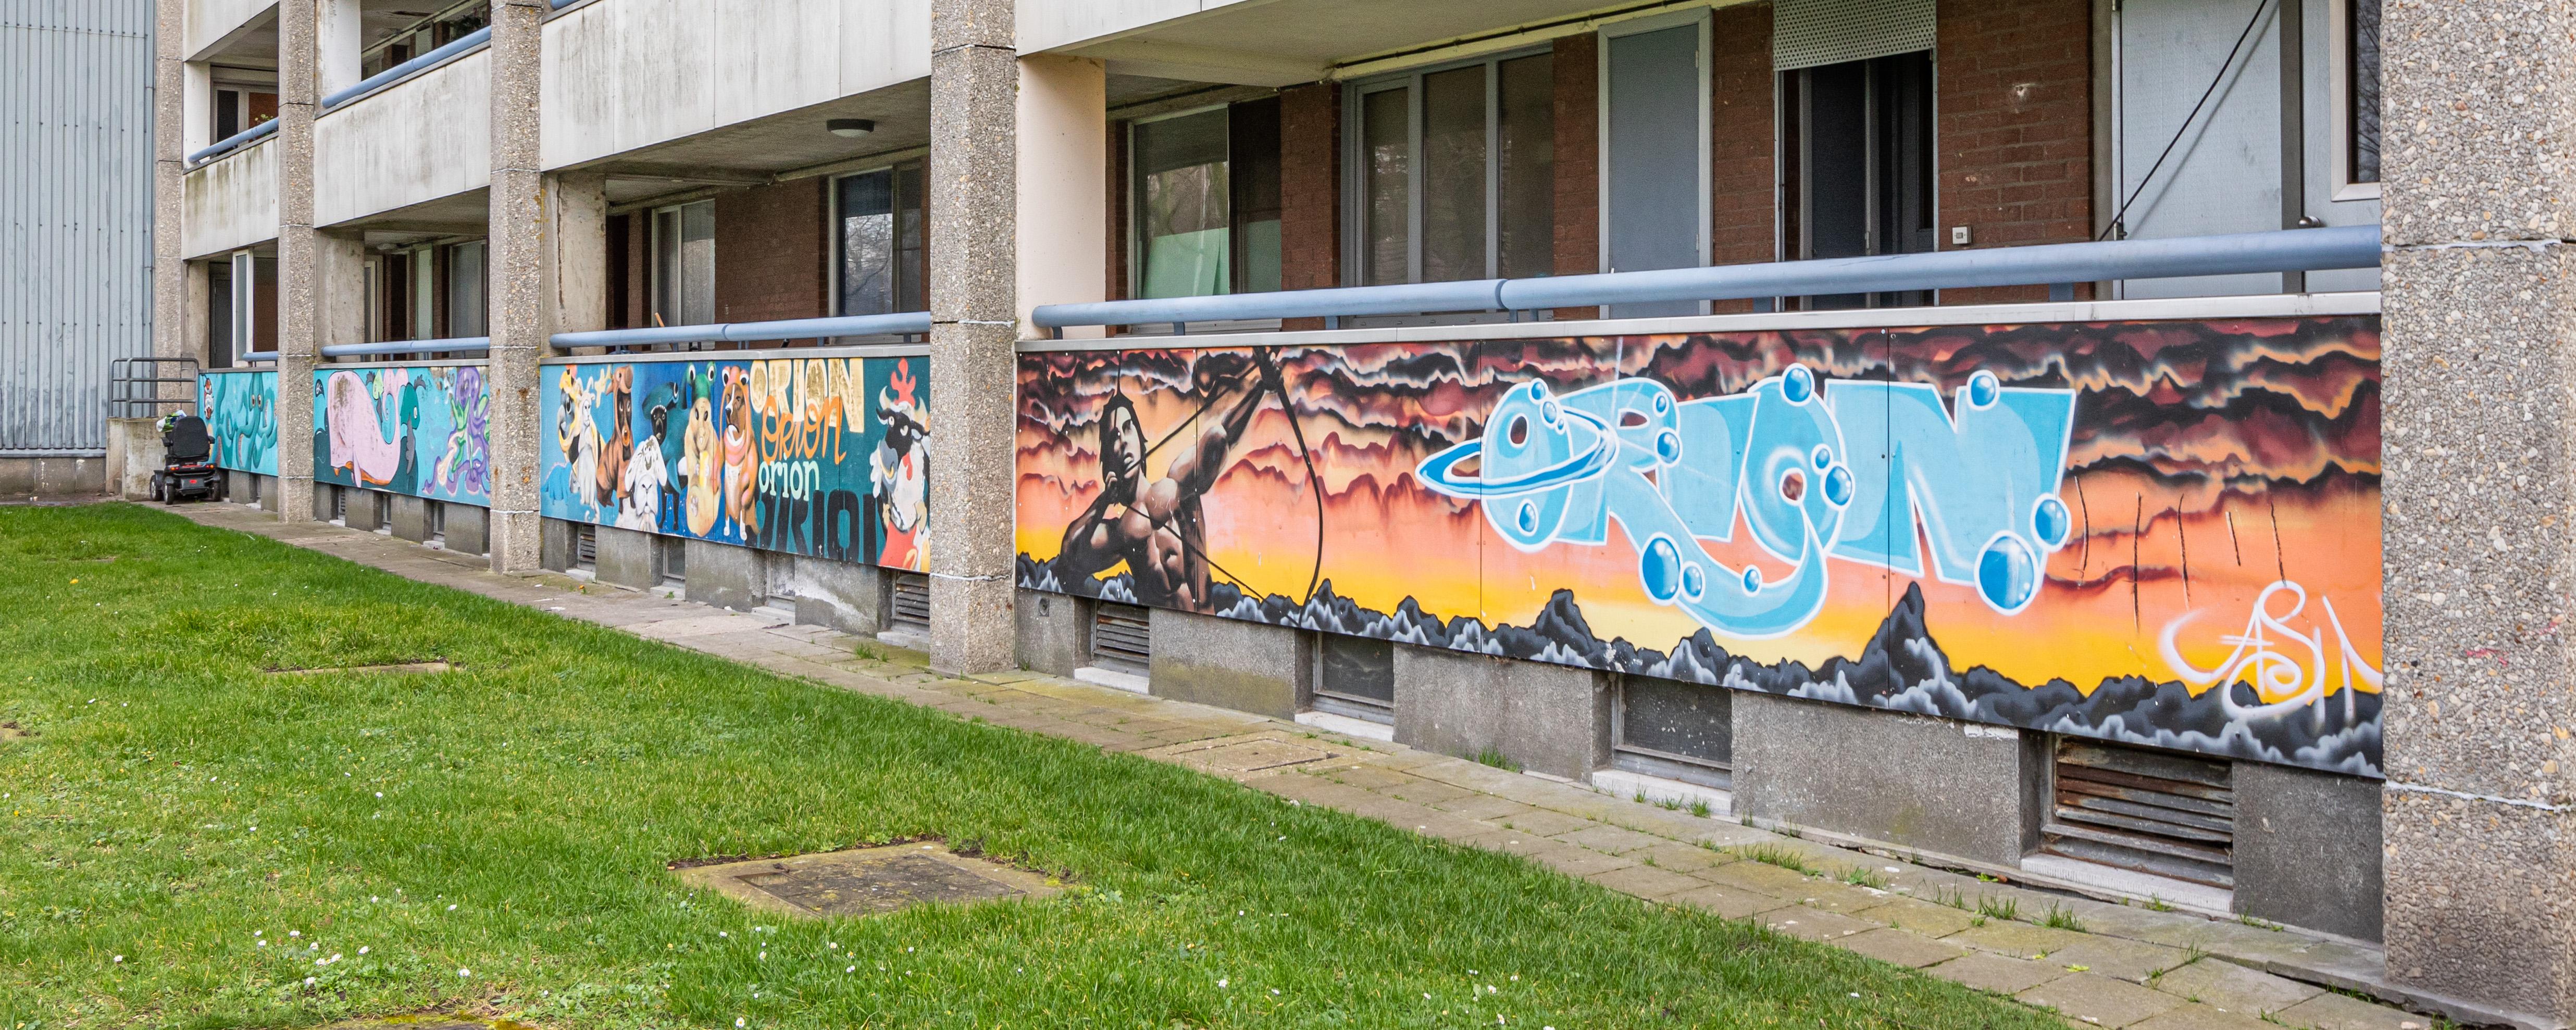 Graffiti jam Nieuw Gent ©Bernadette Van de Velde